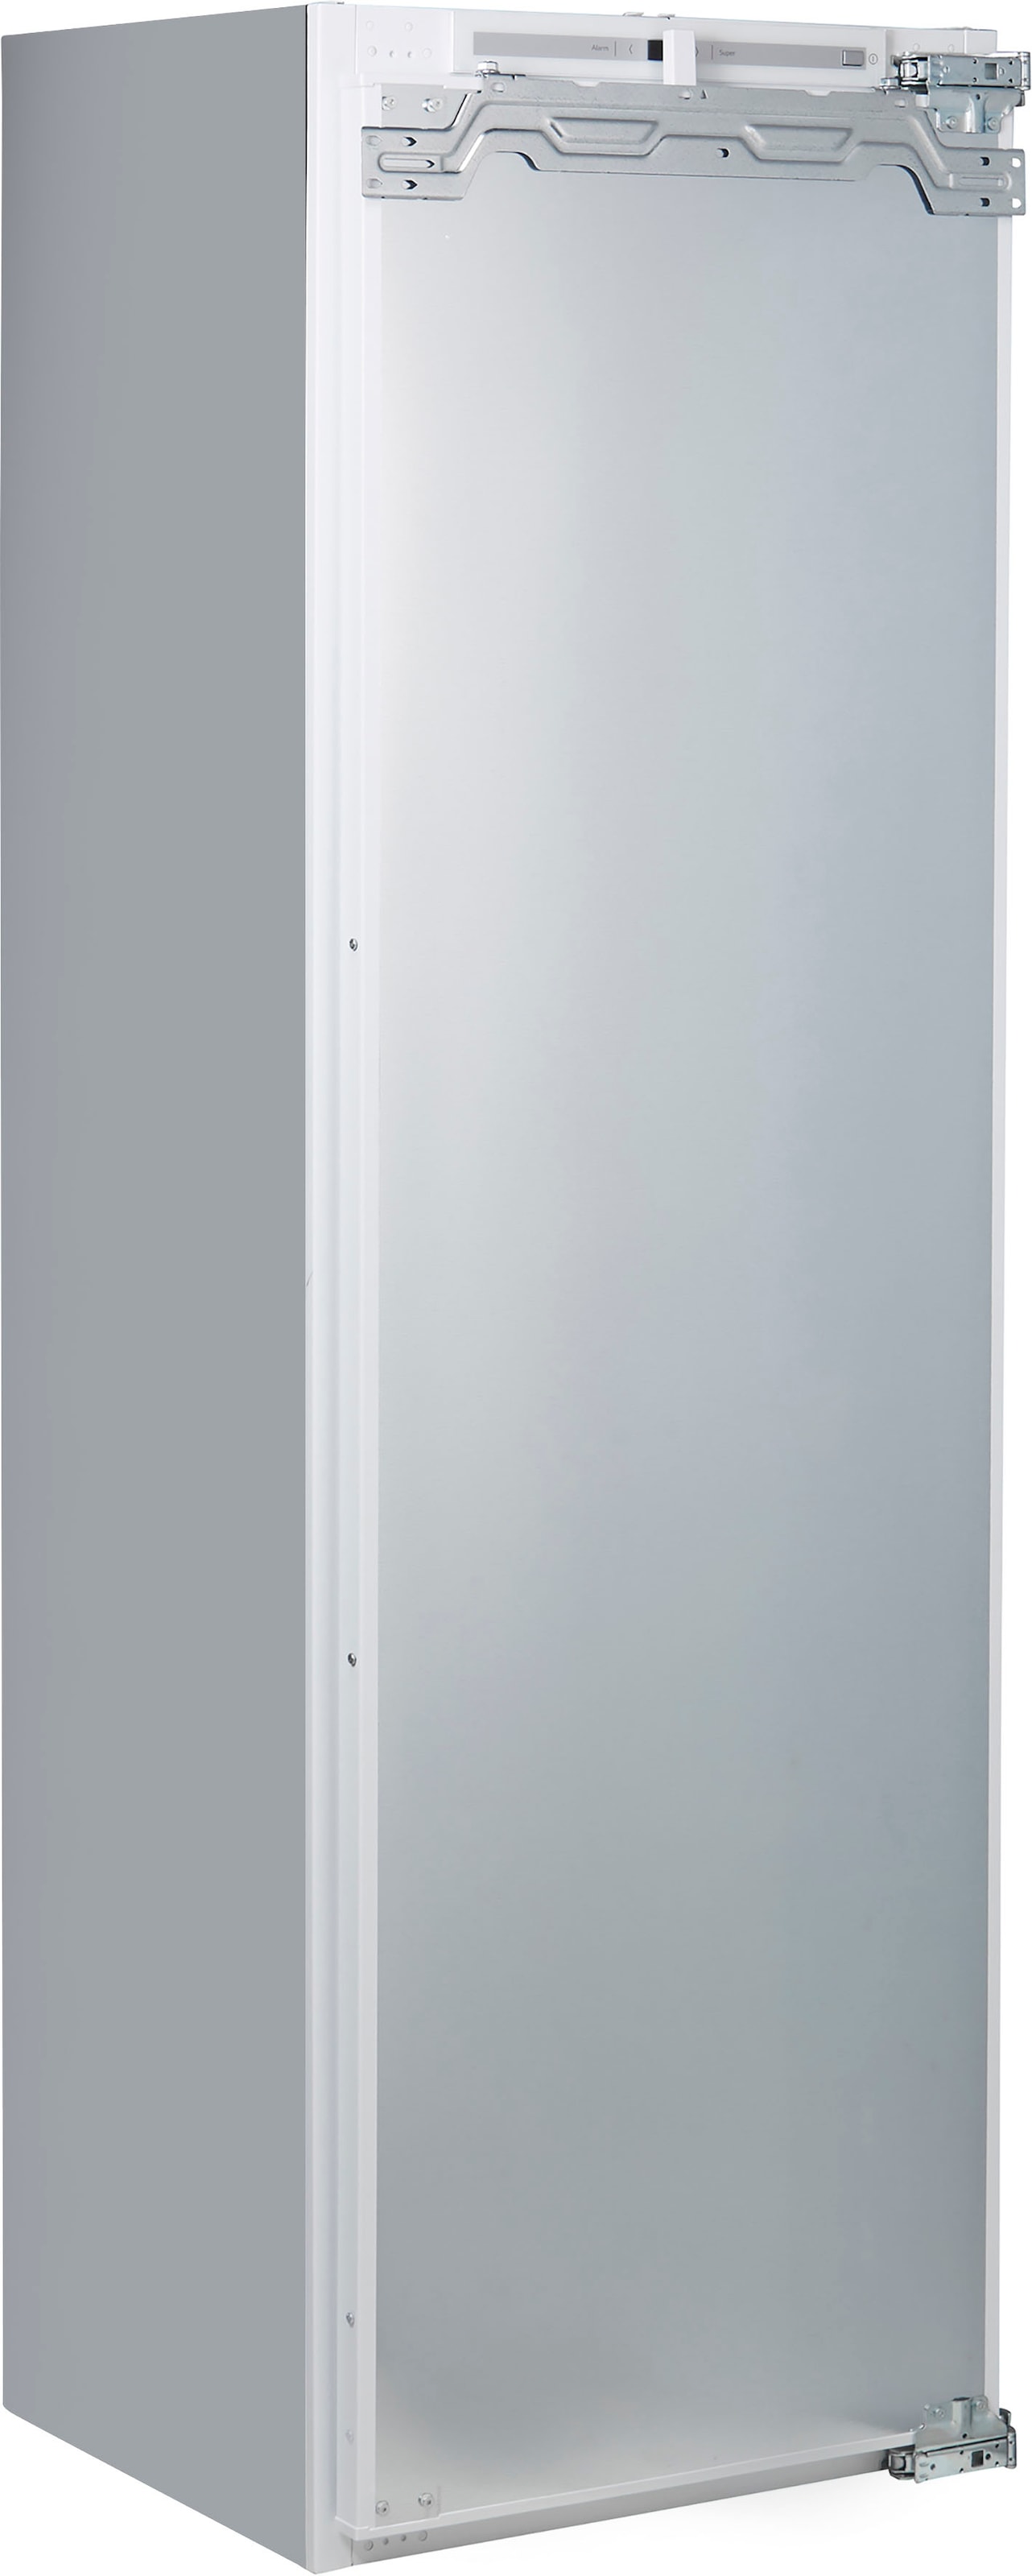 NEFF Einbaukühlschrank »KI1813FE0«, XXL mit cm 56 Jahren 3 breit KI1813FE0, Garantie hoch, 177,2 cm